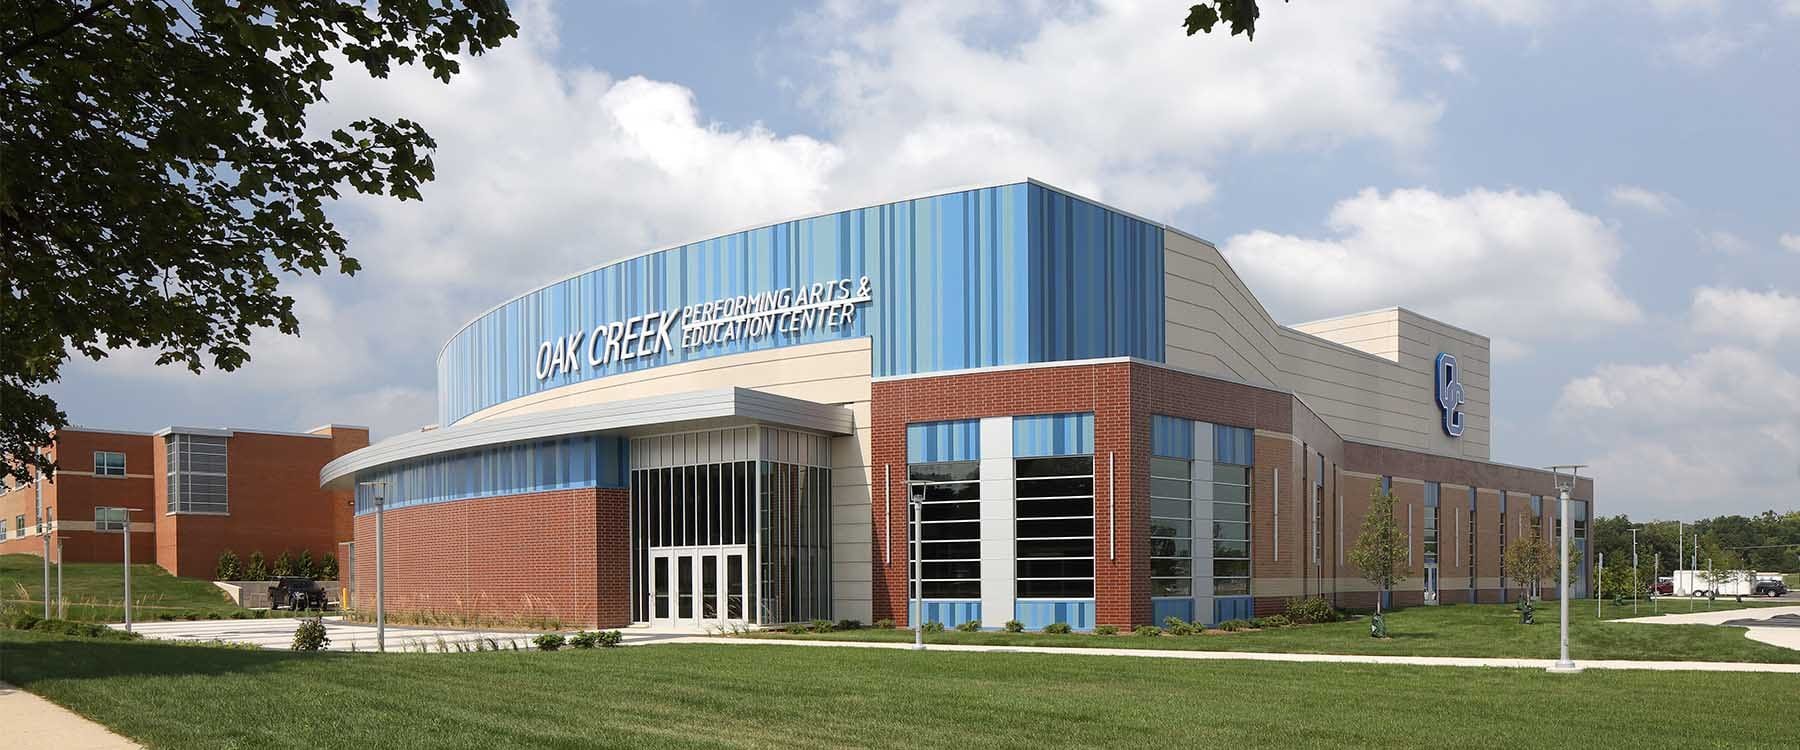 Oak Creek School District Performing Arts Center, in Oak Creek Wisconsin